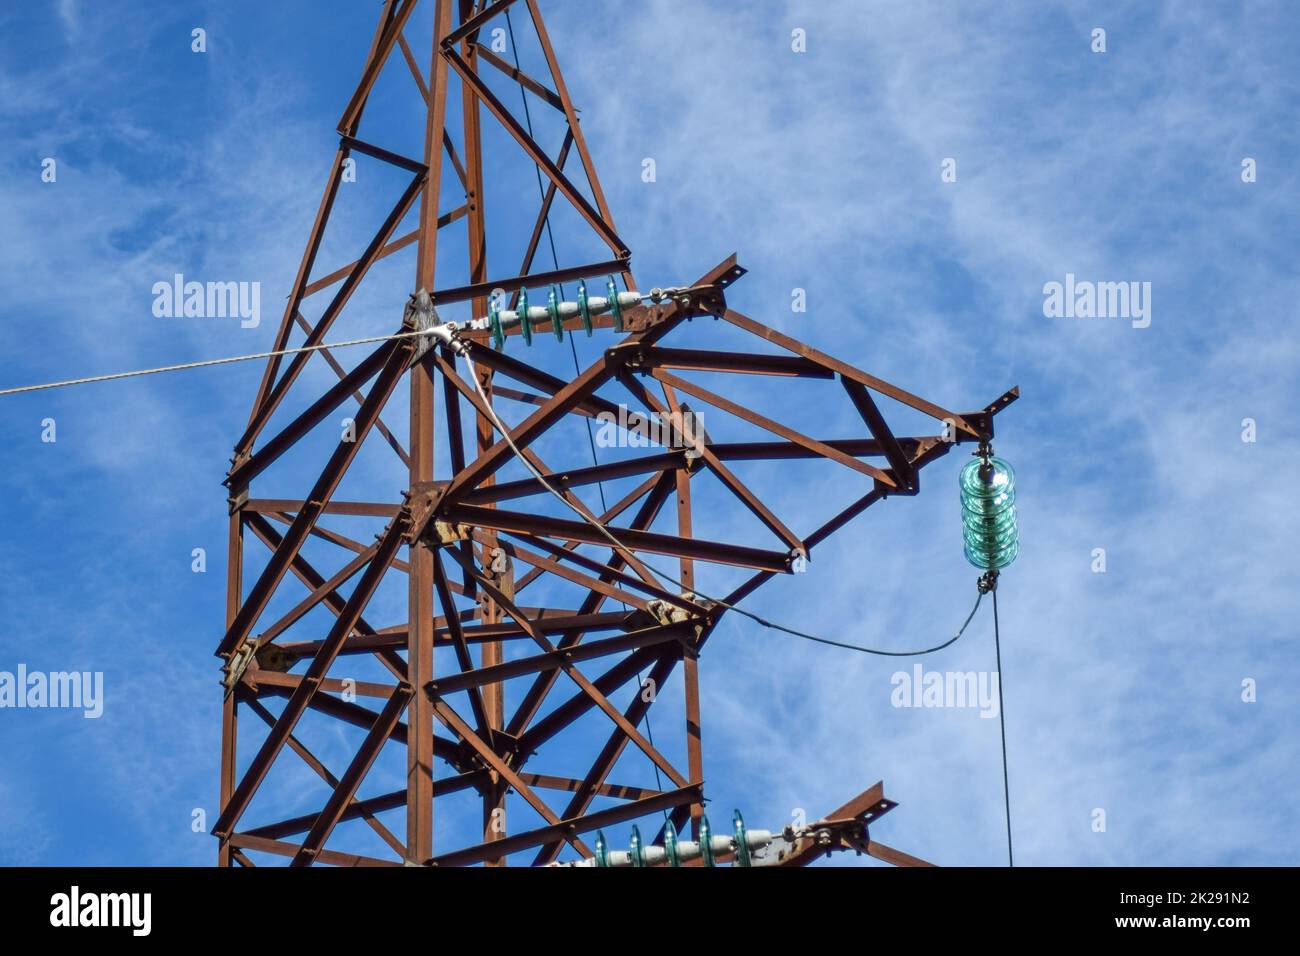 Unterstützt Hochspannungsleitungen gegen den blauen Himmel mit Wolken. Elektroindustrie Stockfoto